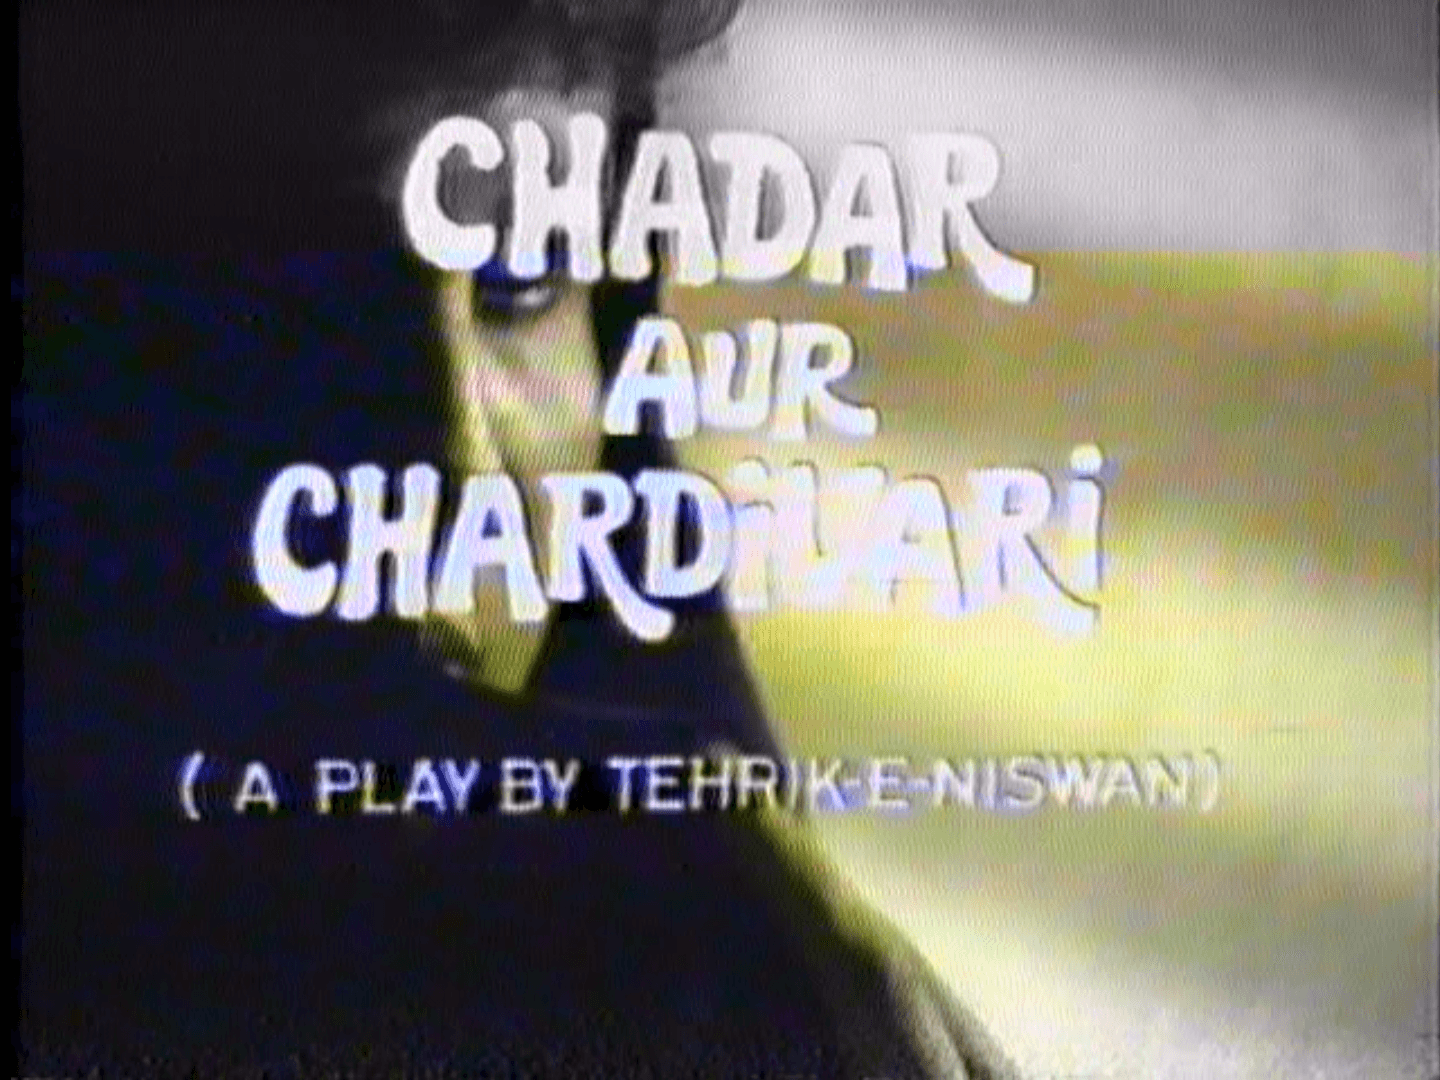 Chadar aur Chardivari